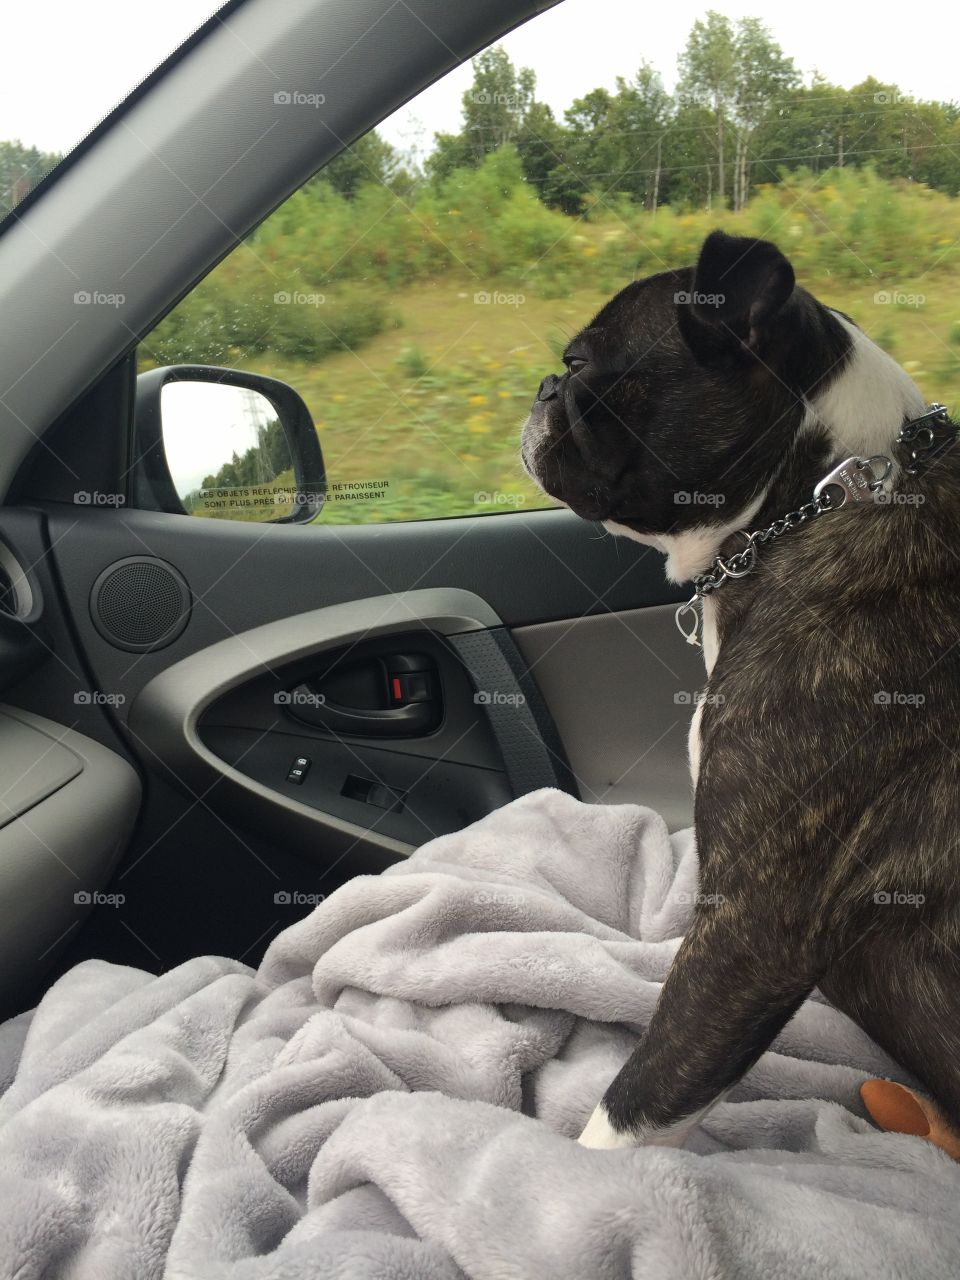 Dog enjoying a car ride! 🤗